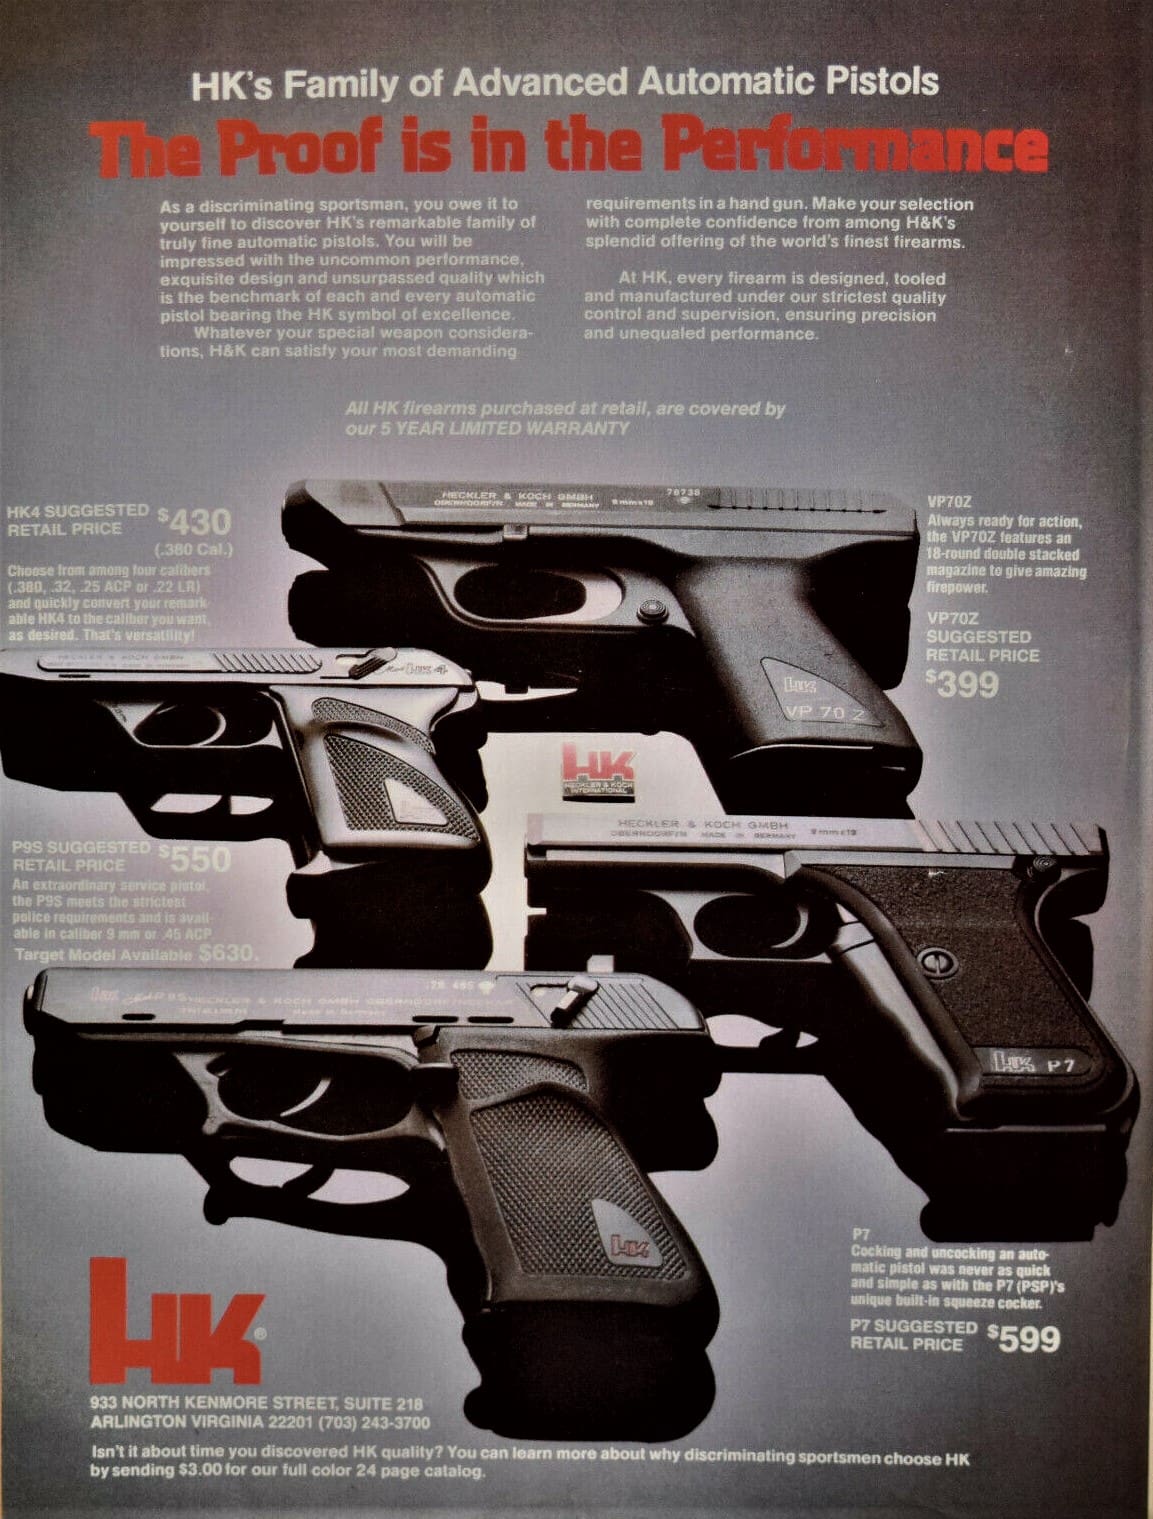 HK VP70Z 9mm pistol